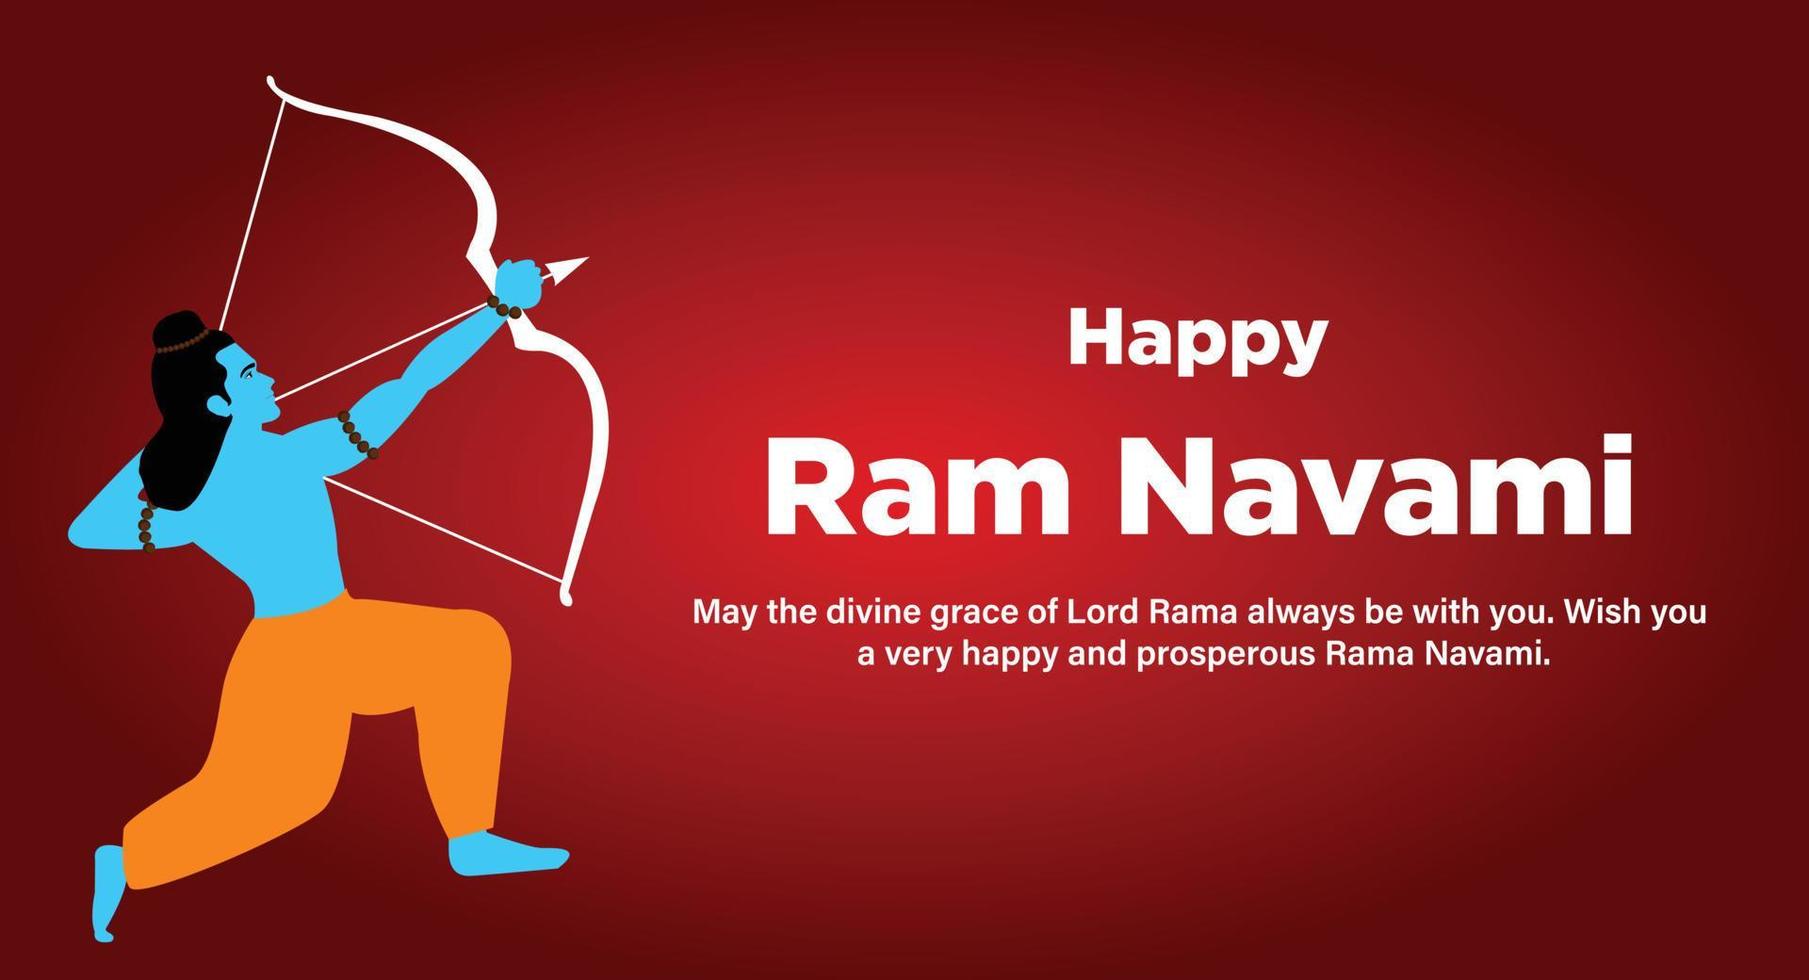 shree RAM navami Indien hindou Festival fête vecteur conception